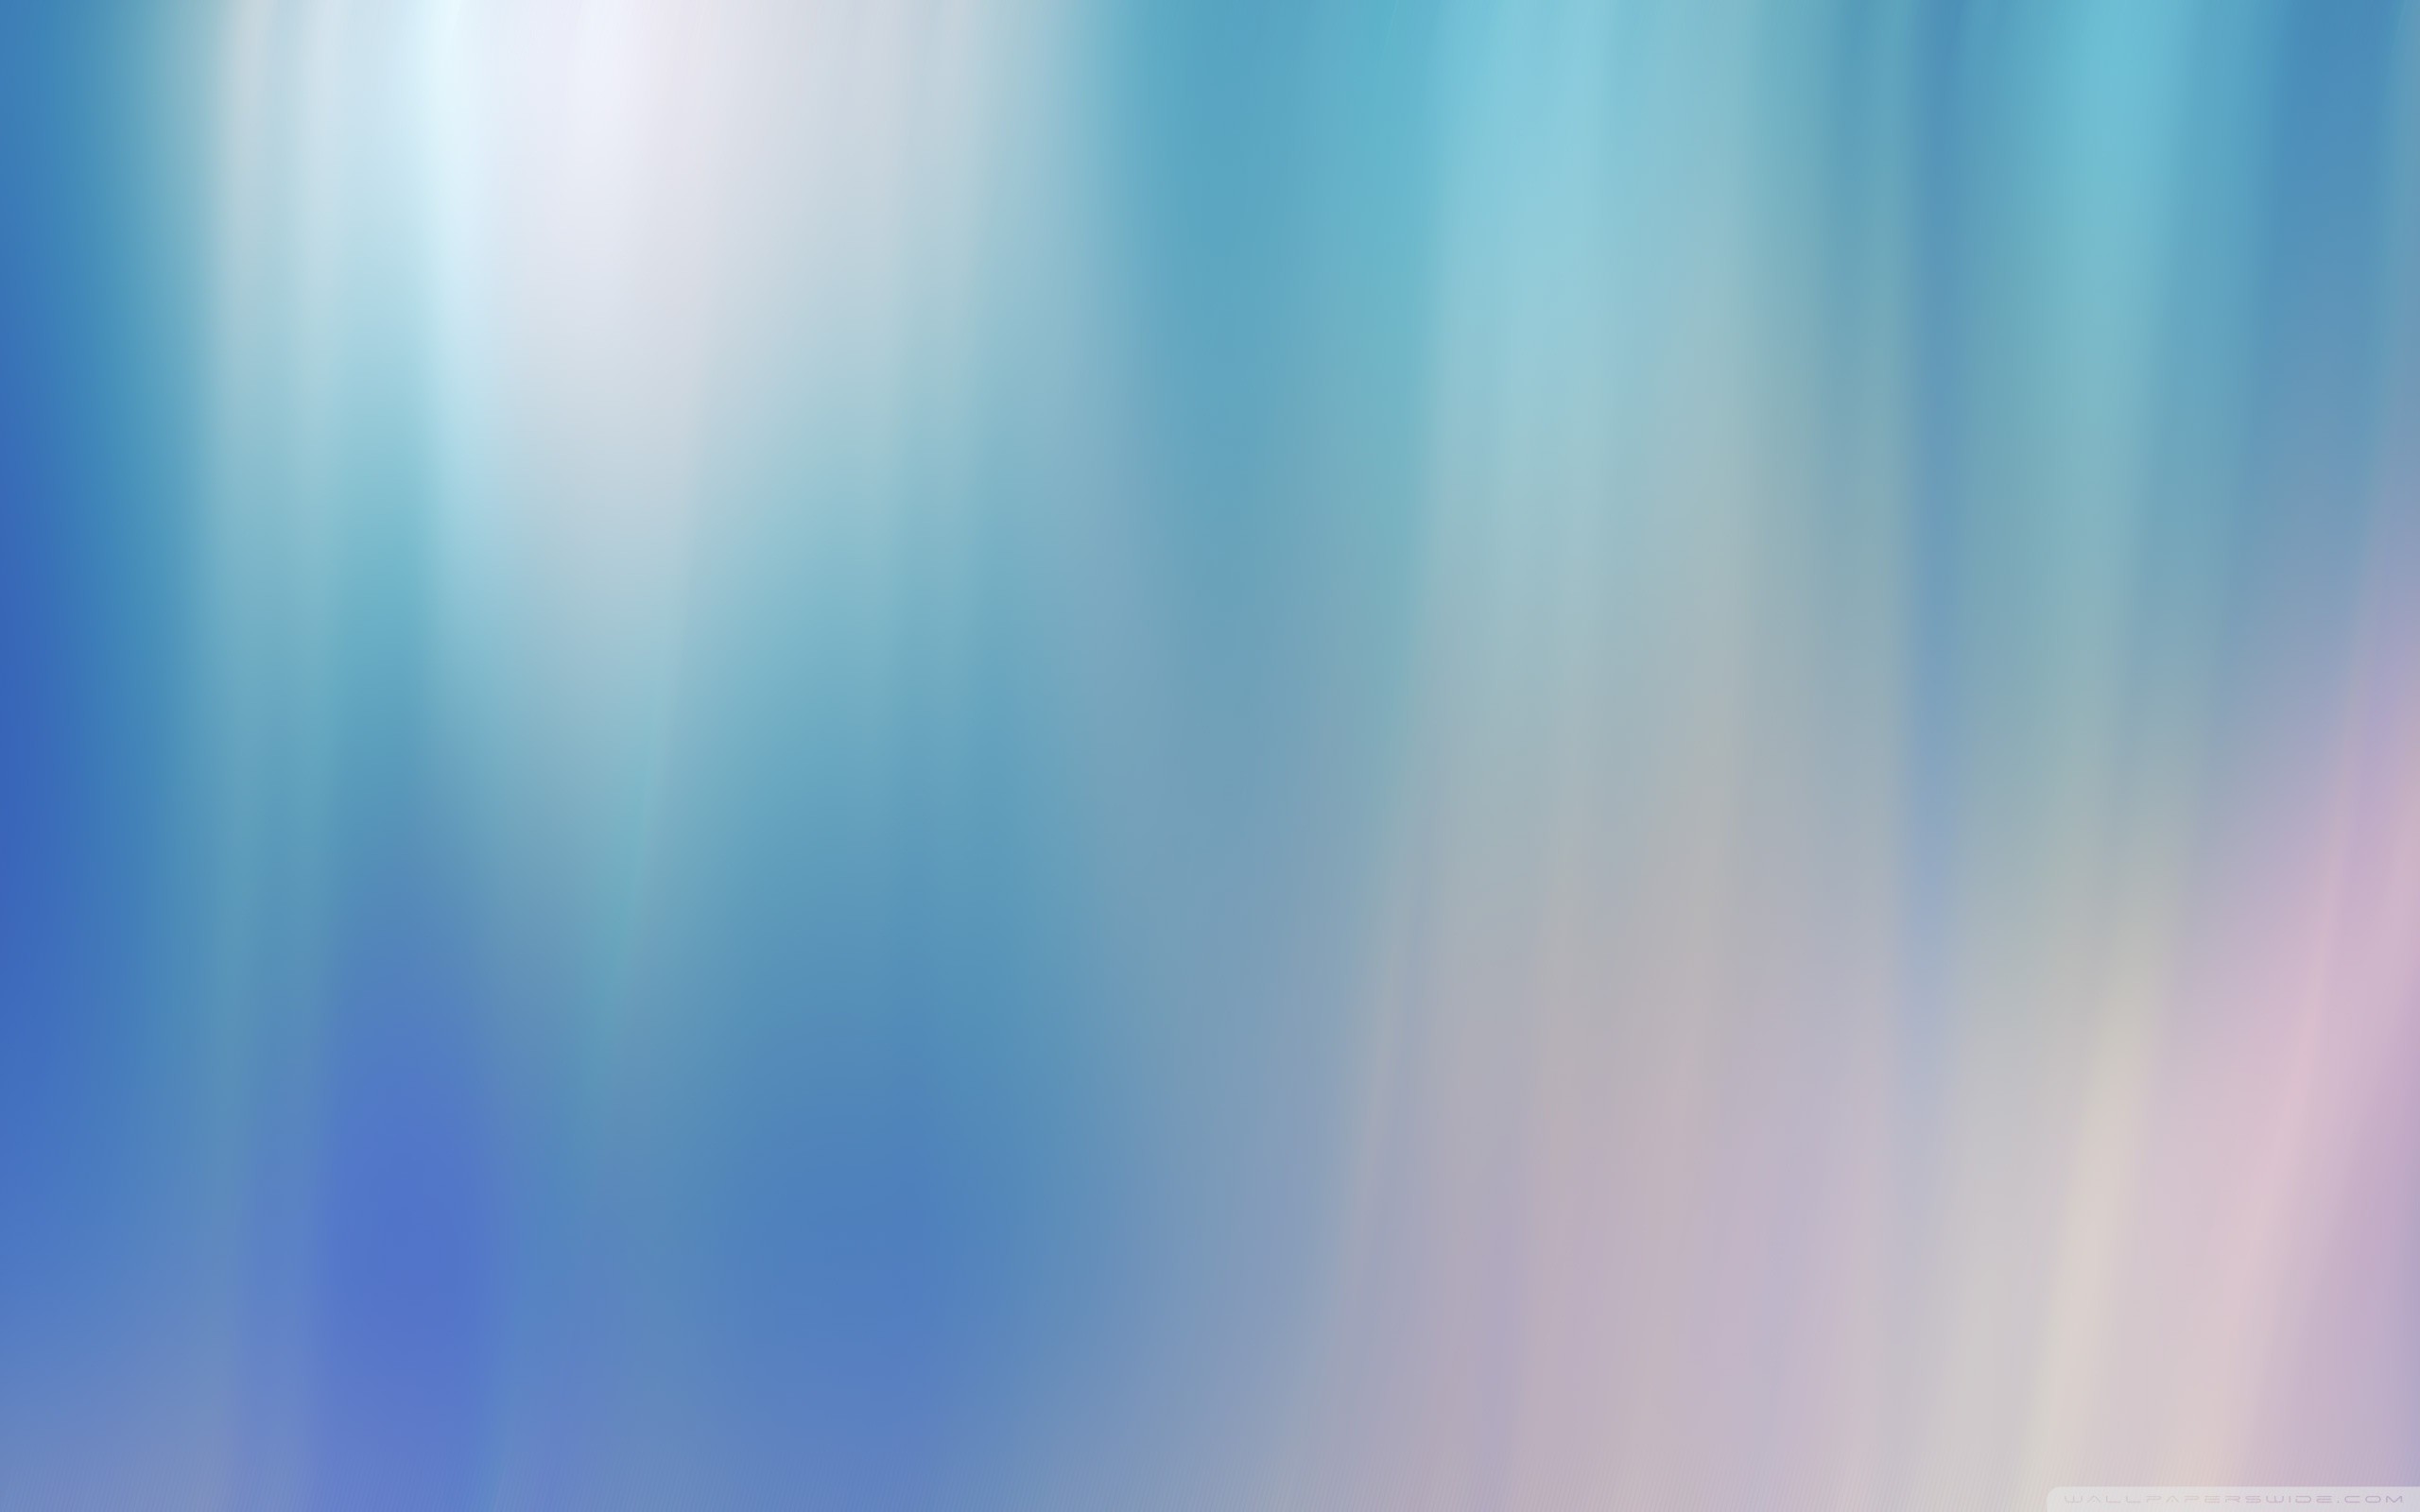 2560x1600 ... light blue background ii hd desktop wallpaper high definition ...